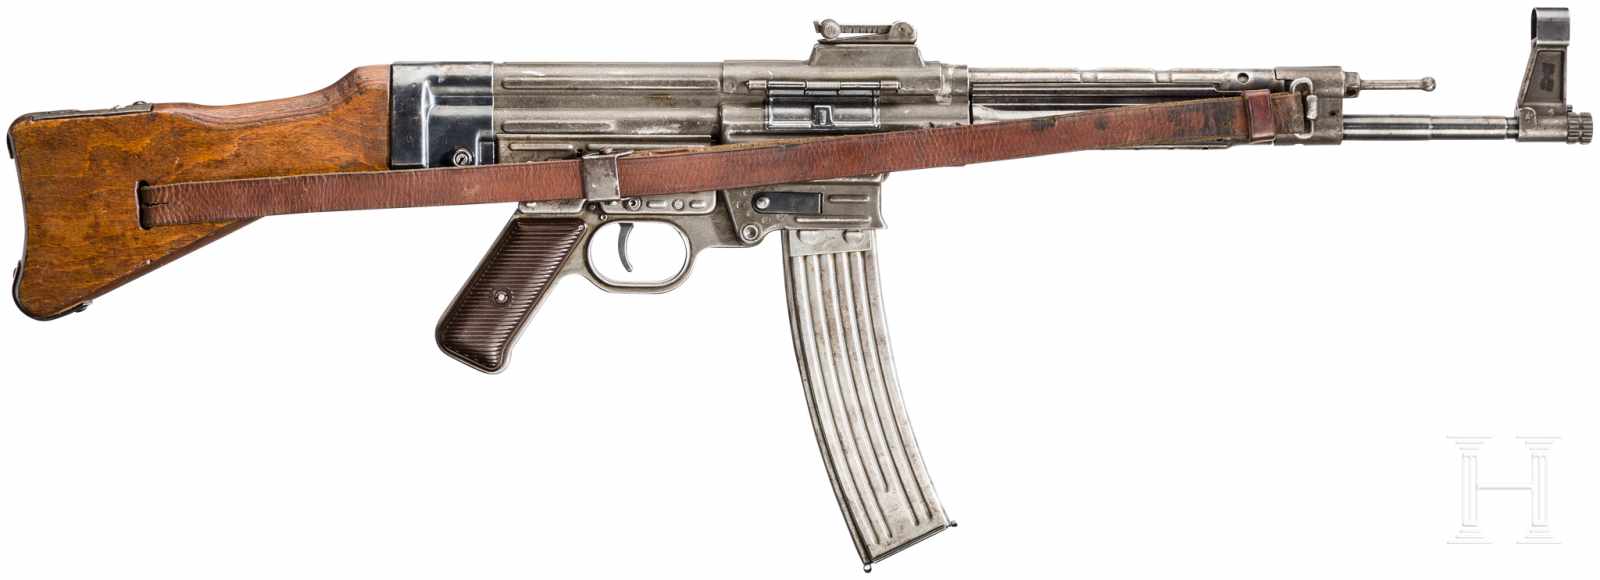 Originale Maschinenpistole Mod. 44 ("MP 44"), Code "swj"Kal. 7,92x33 mm, Nr. 486H/XE, Nummerngleich.